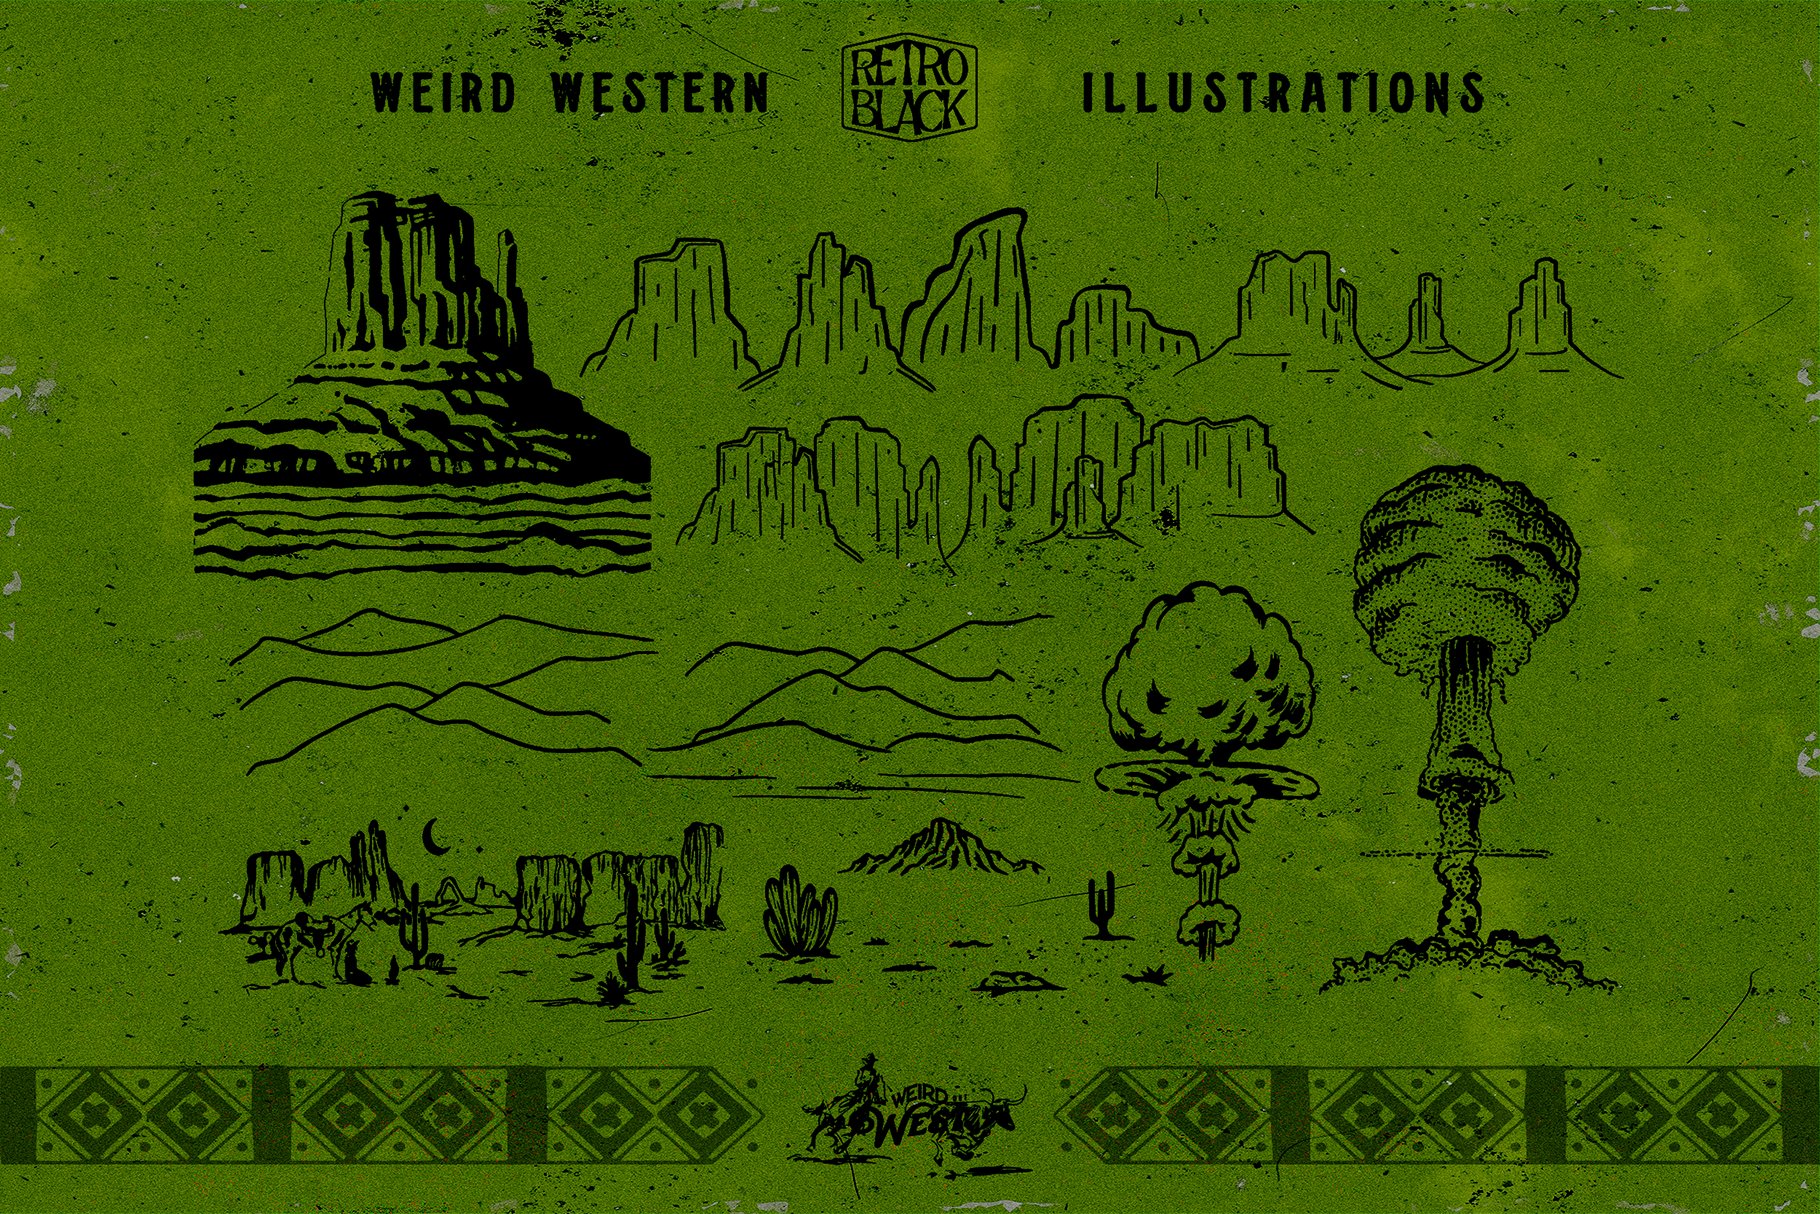 320款90年代复古西部牛仔沙漠元素动物仙人掌矢量图标插图AI矢量设计素材 320 Western Icons and Illustrations（7712）图层云11